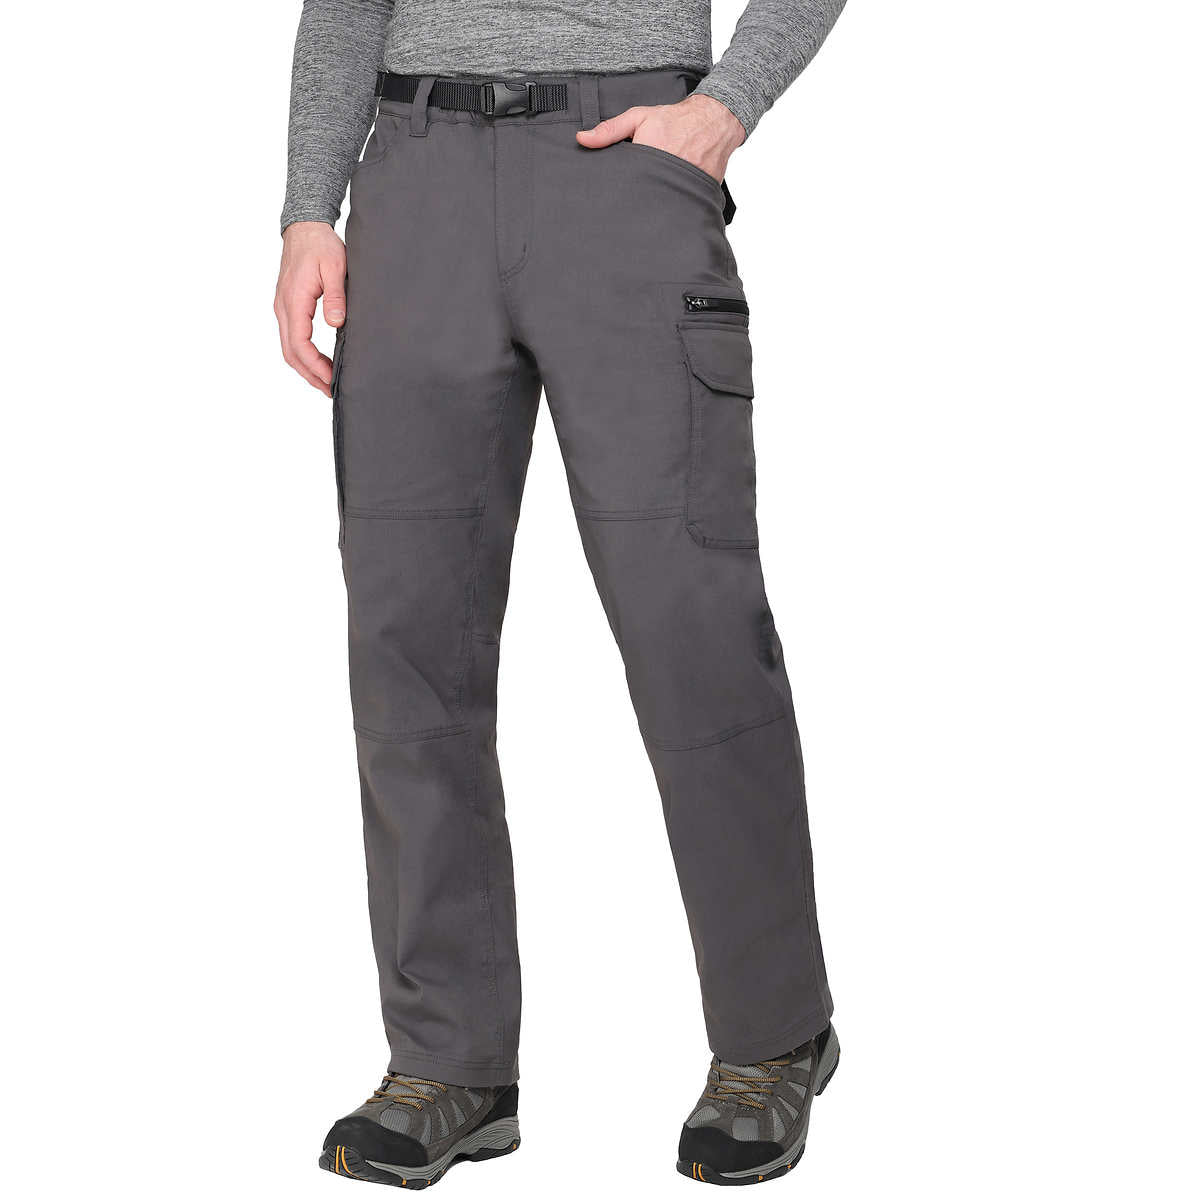 BC Clothing - Pantalon cargo doublé – CHAP Aubaines